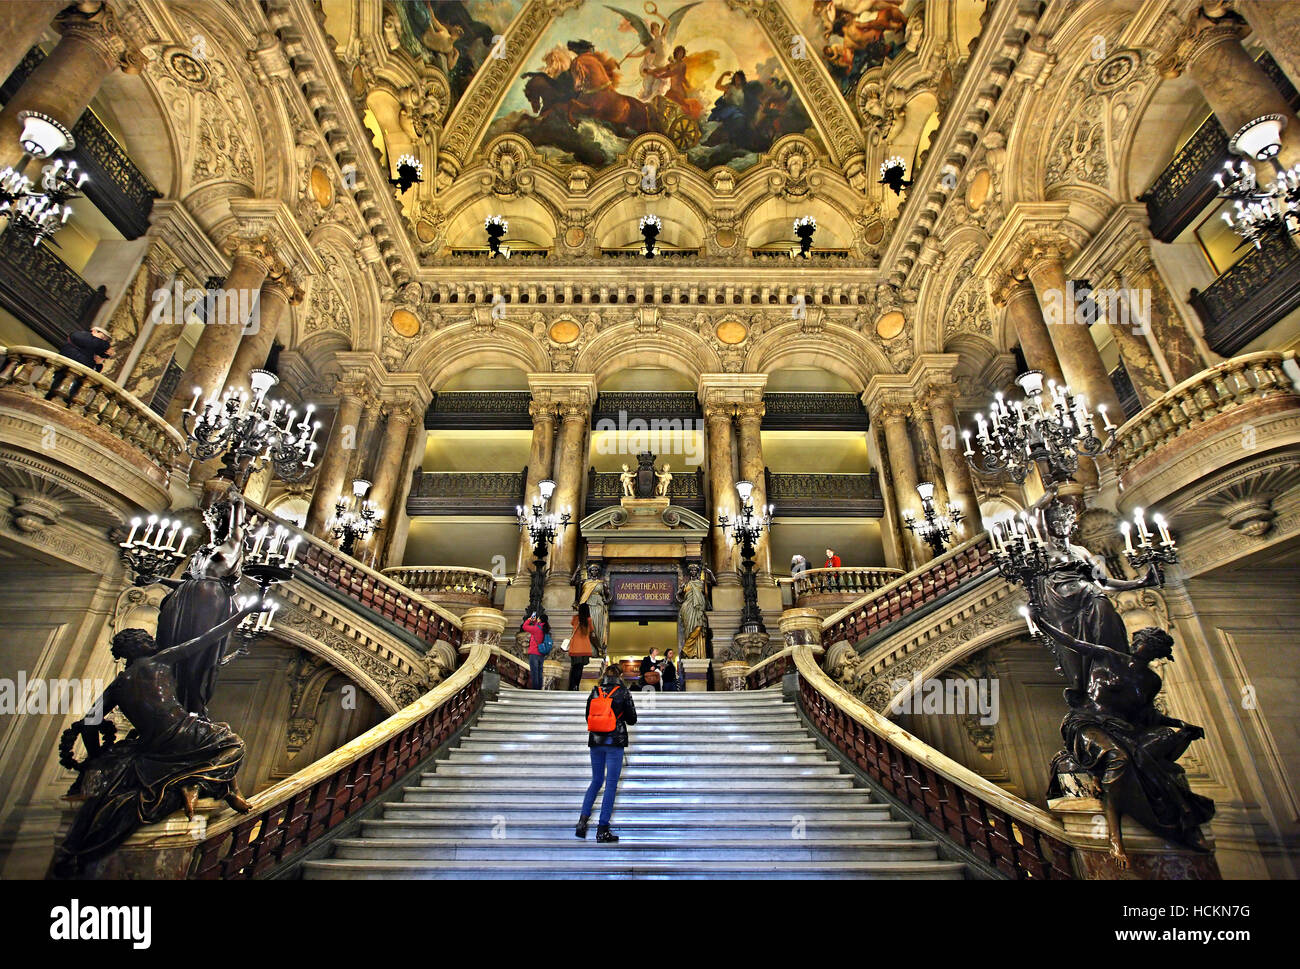 Le Grand escalier dans le Palais Garnier, Opéra National, Paris, France. Banque D'Images